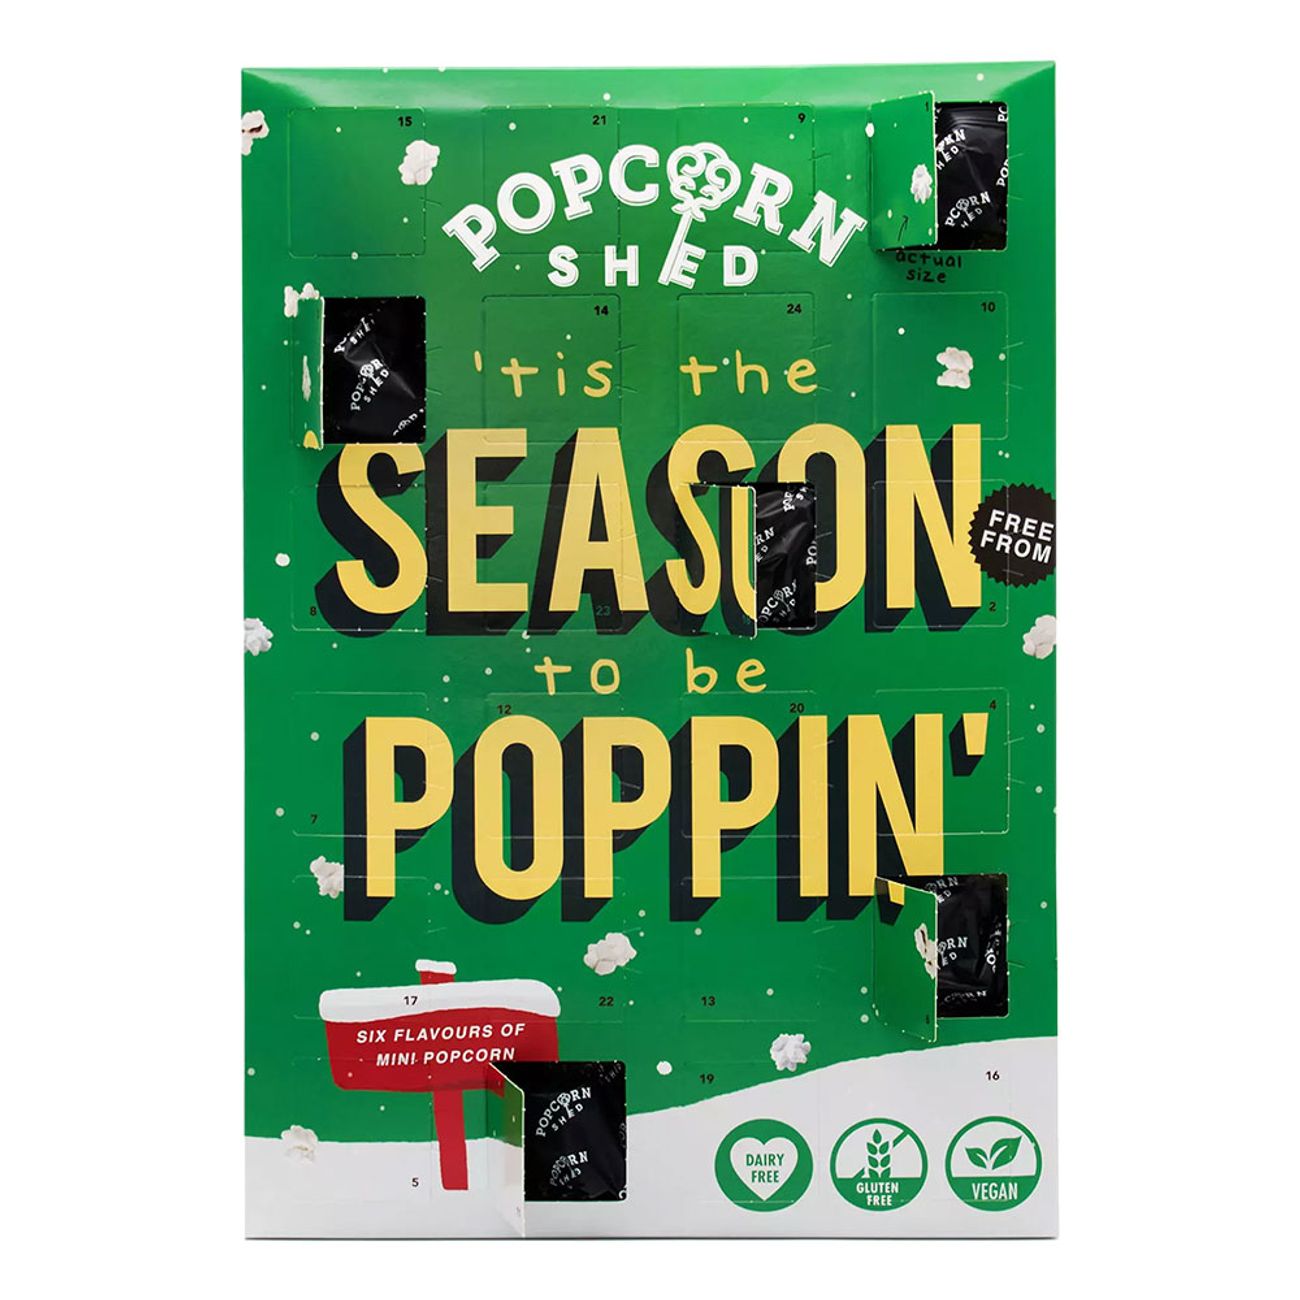 popcorn-shed-vegansk-popcorn-julkalender-80194-1